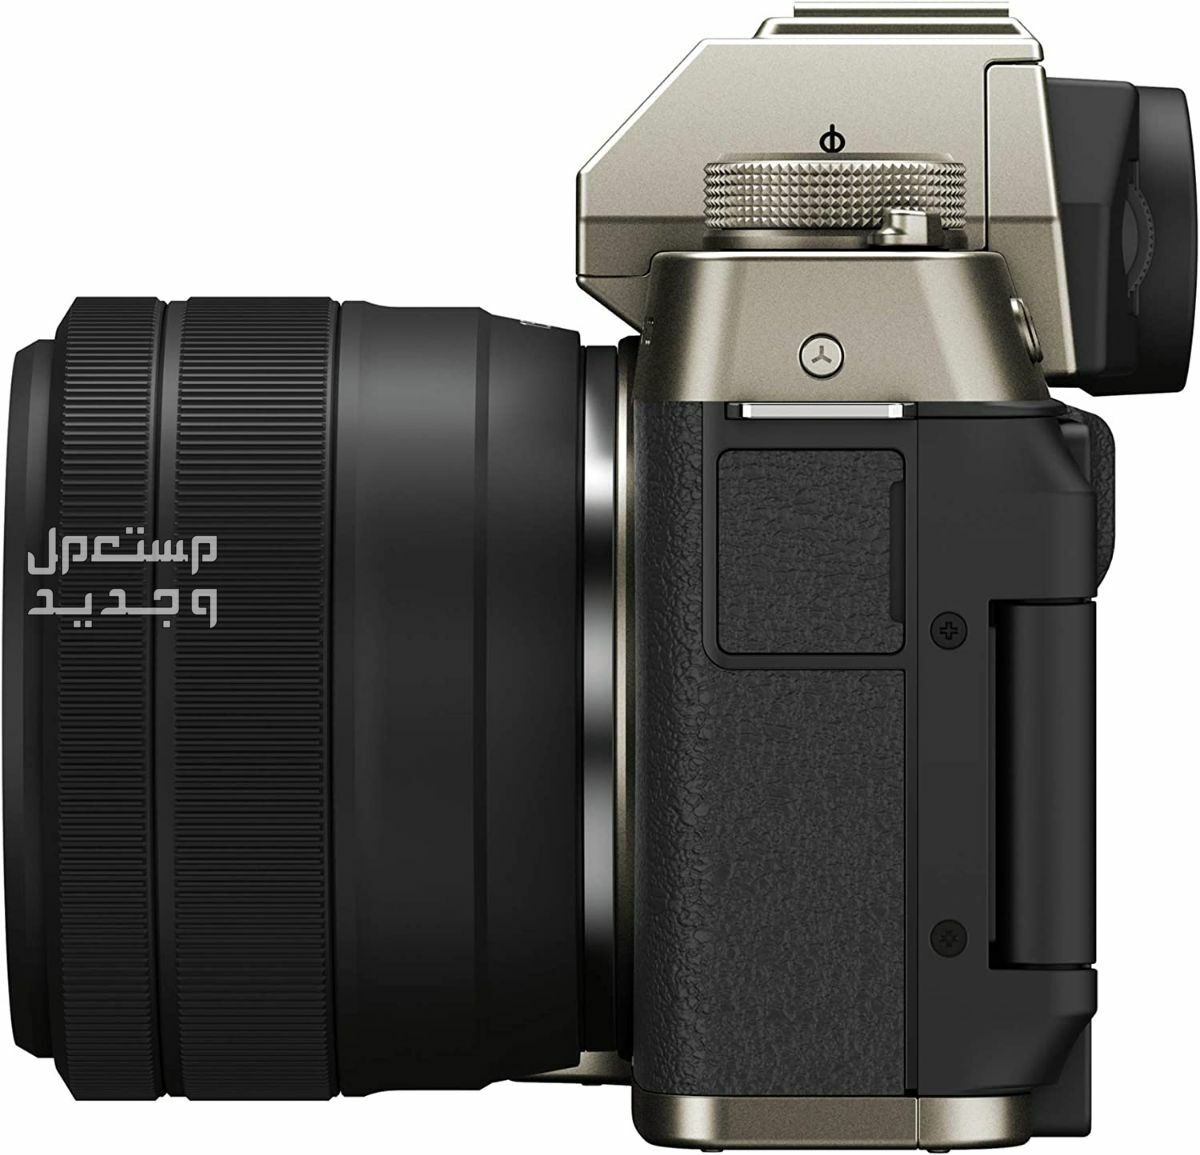 10 كاميرات تصوير ماركات عالمية بأسعار رخيصة في ليبيا سعر كاميرا Fujifilm X-T200